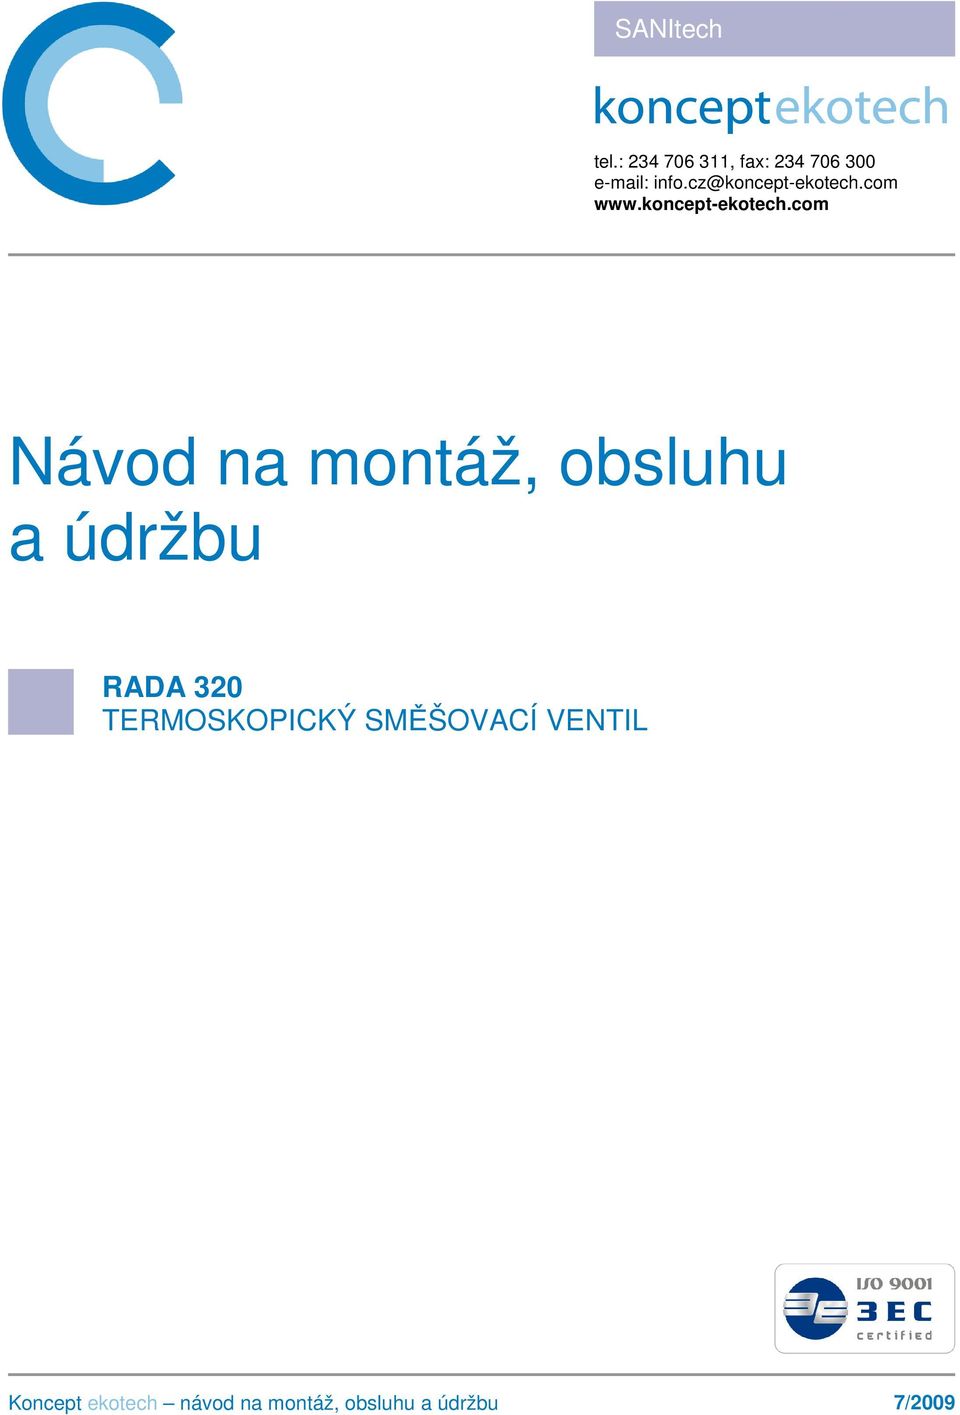 e-mail: info.cz@koncept-ekotech.